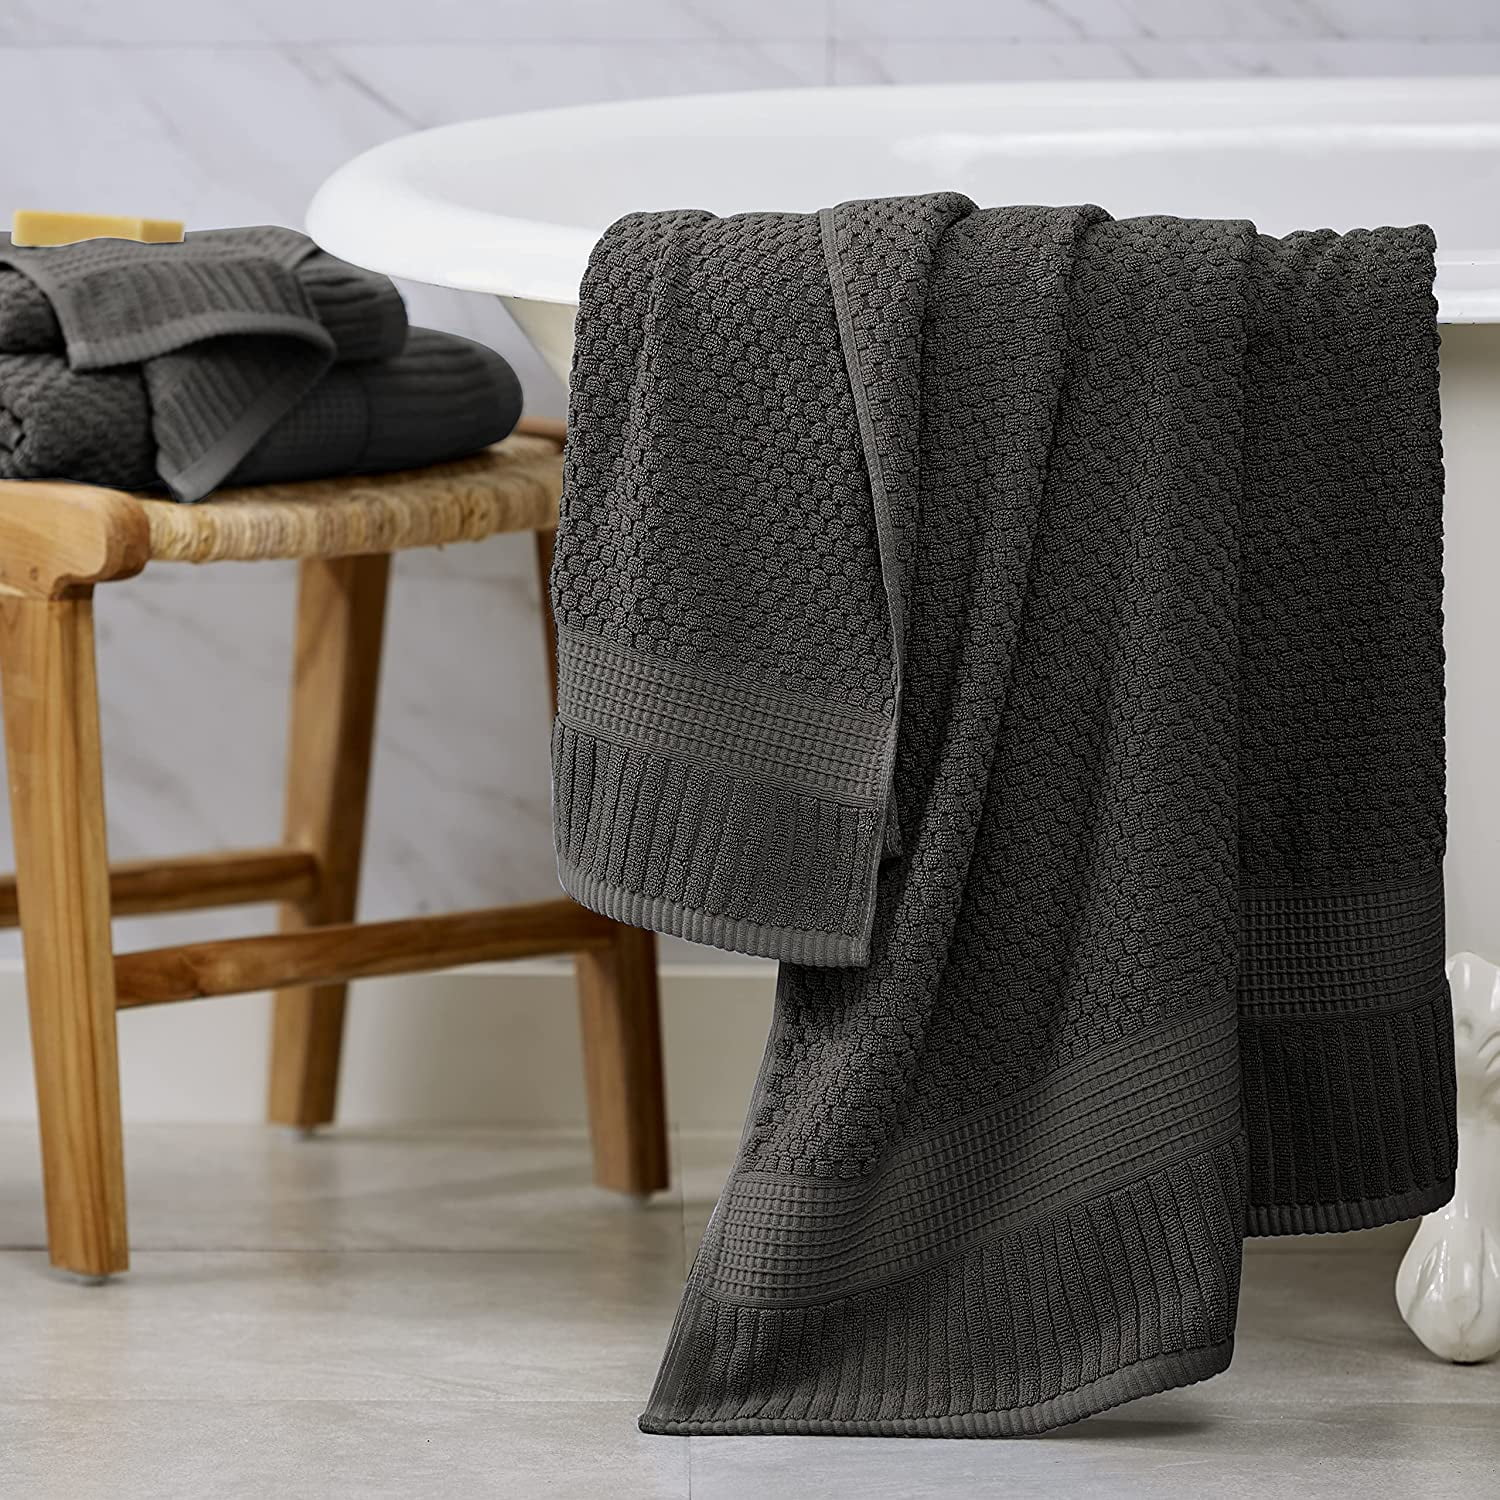 COTTON CRAFT 6 Piece Towel Set - 100% Cotton Bathroom Towels - Soft  Absorbent Sculpted Jacquard Velour Decorative Towel - 550 GSM Luxury Guest  Towel